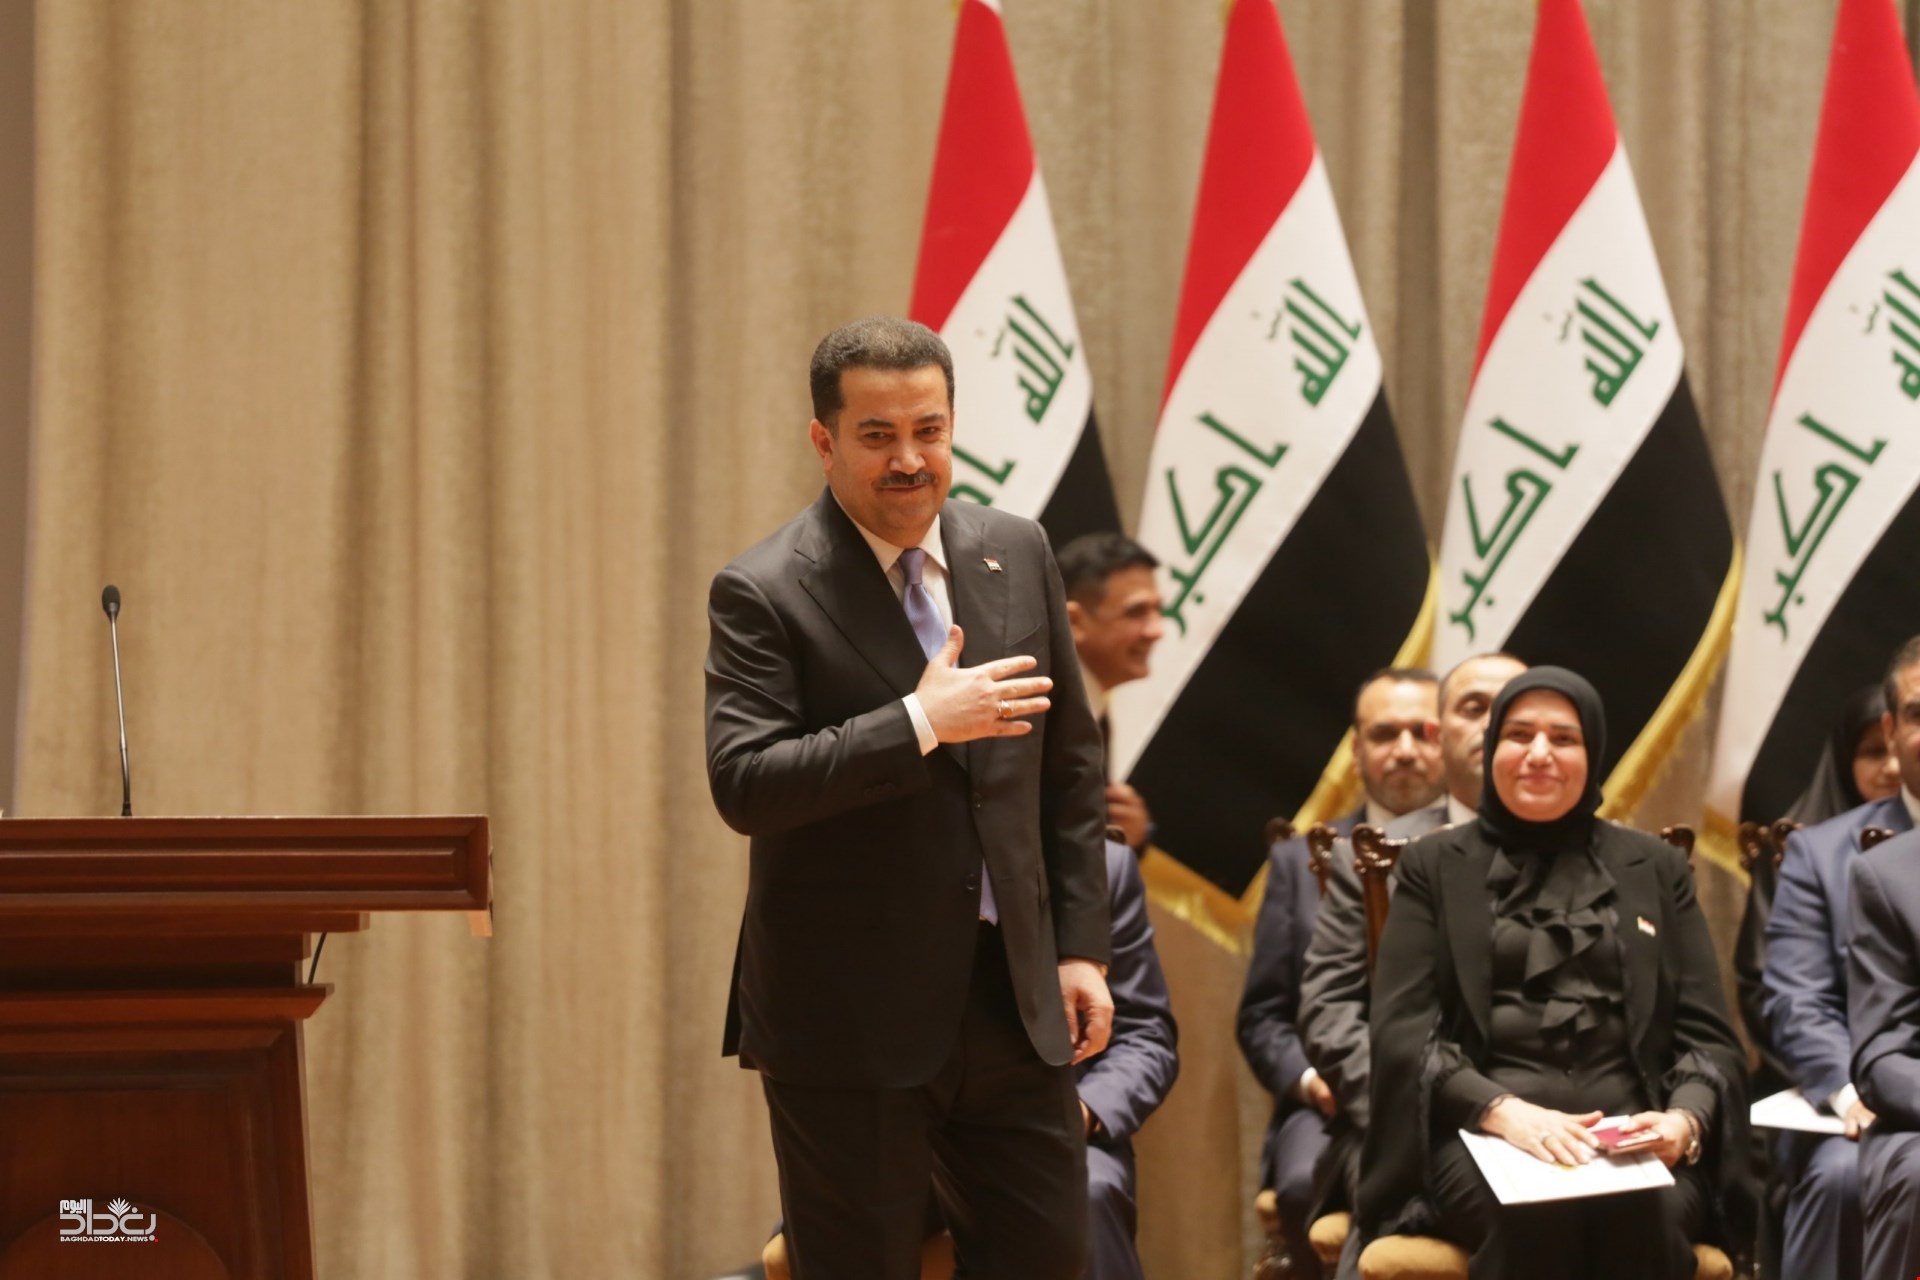 یکیتی نخست وزیر عراق را مختار کرده است تامسئله دو وزارتخانه بدون وزیر درکشور راحل کند